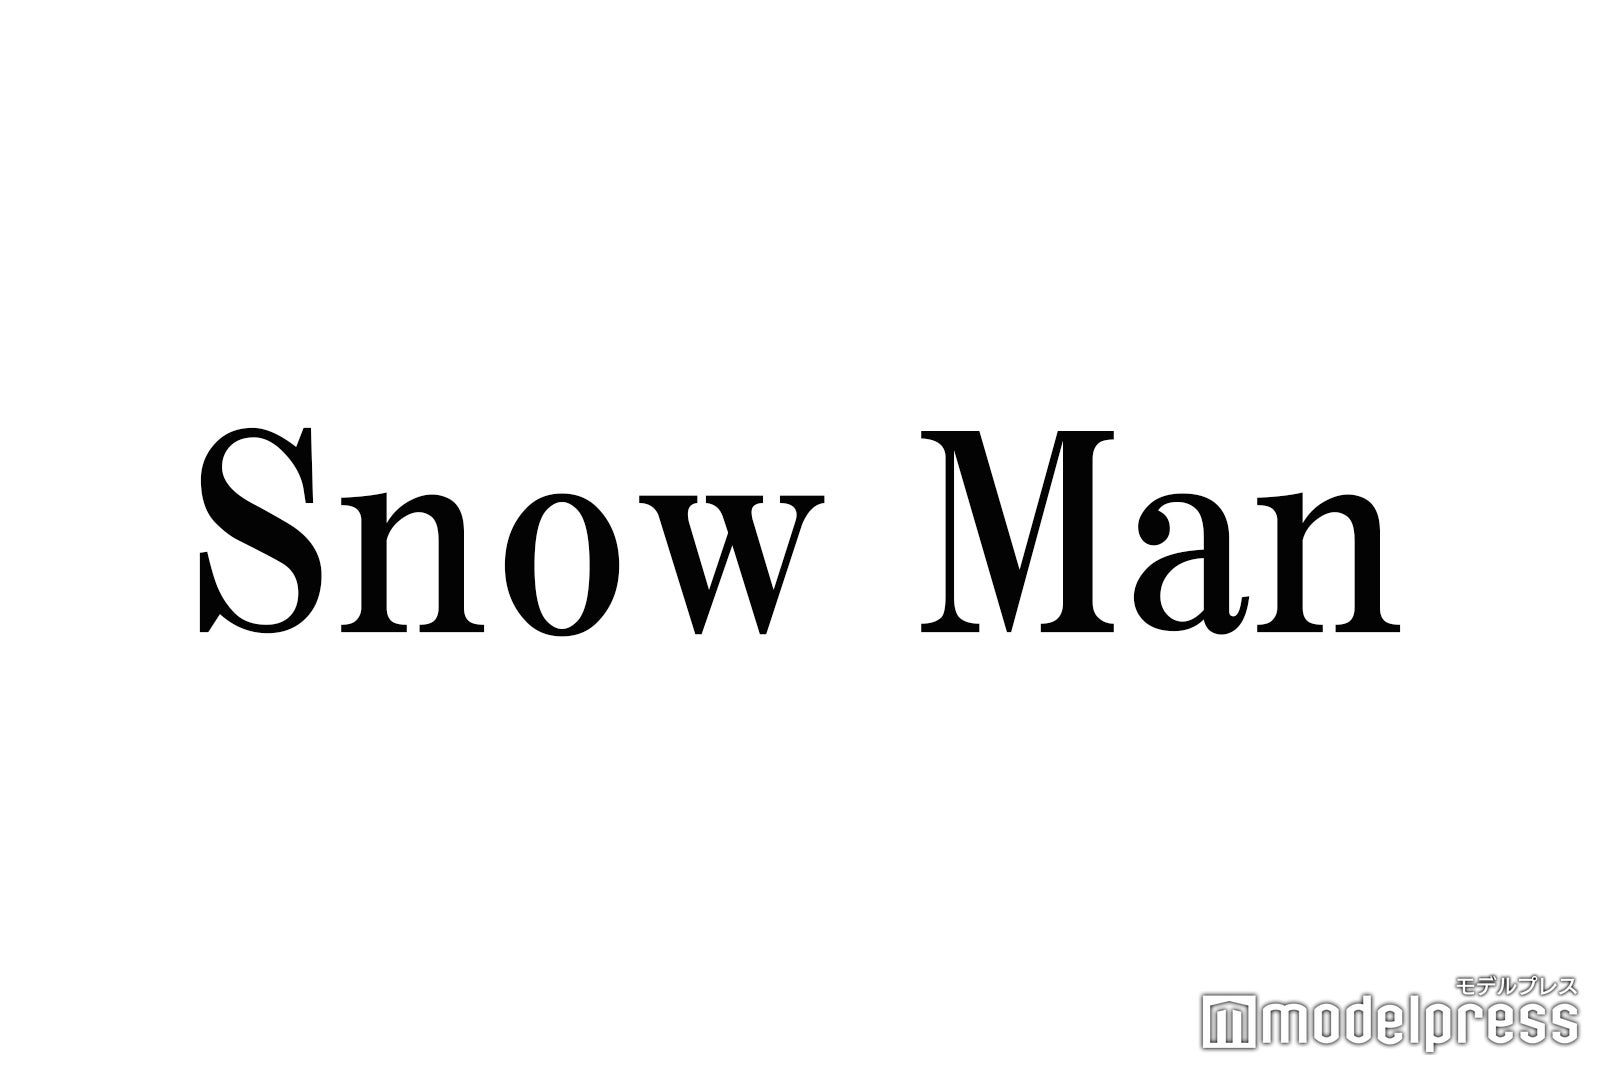 Snow Man リモート 絵しりとり が話題 画伯 揃いの展開に 元気でた 面白すぎる と反響 モデルプレス